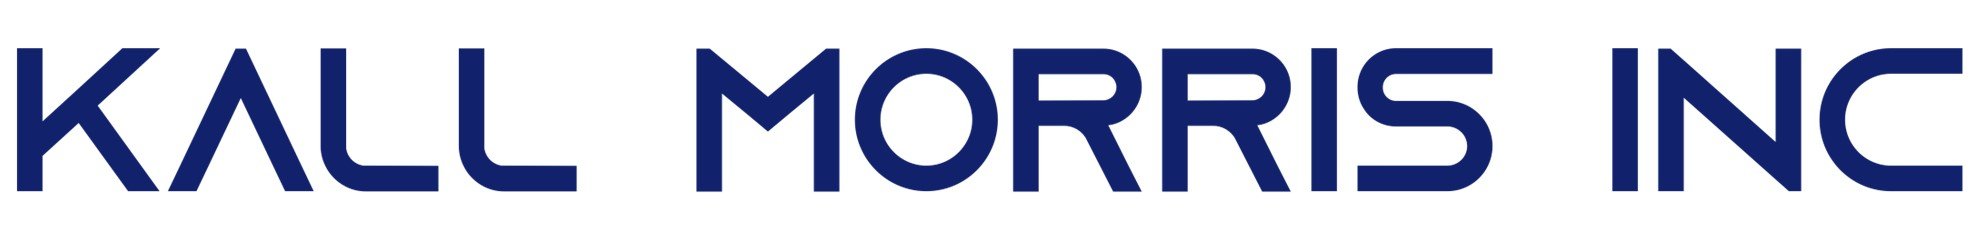 Kall Morris logo.jpg